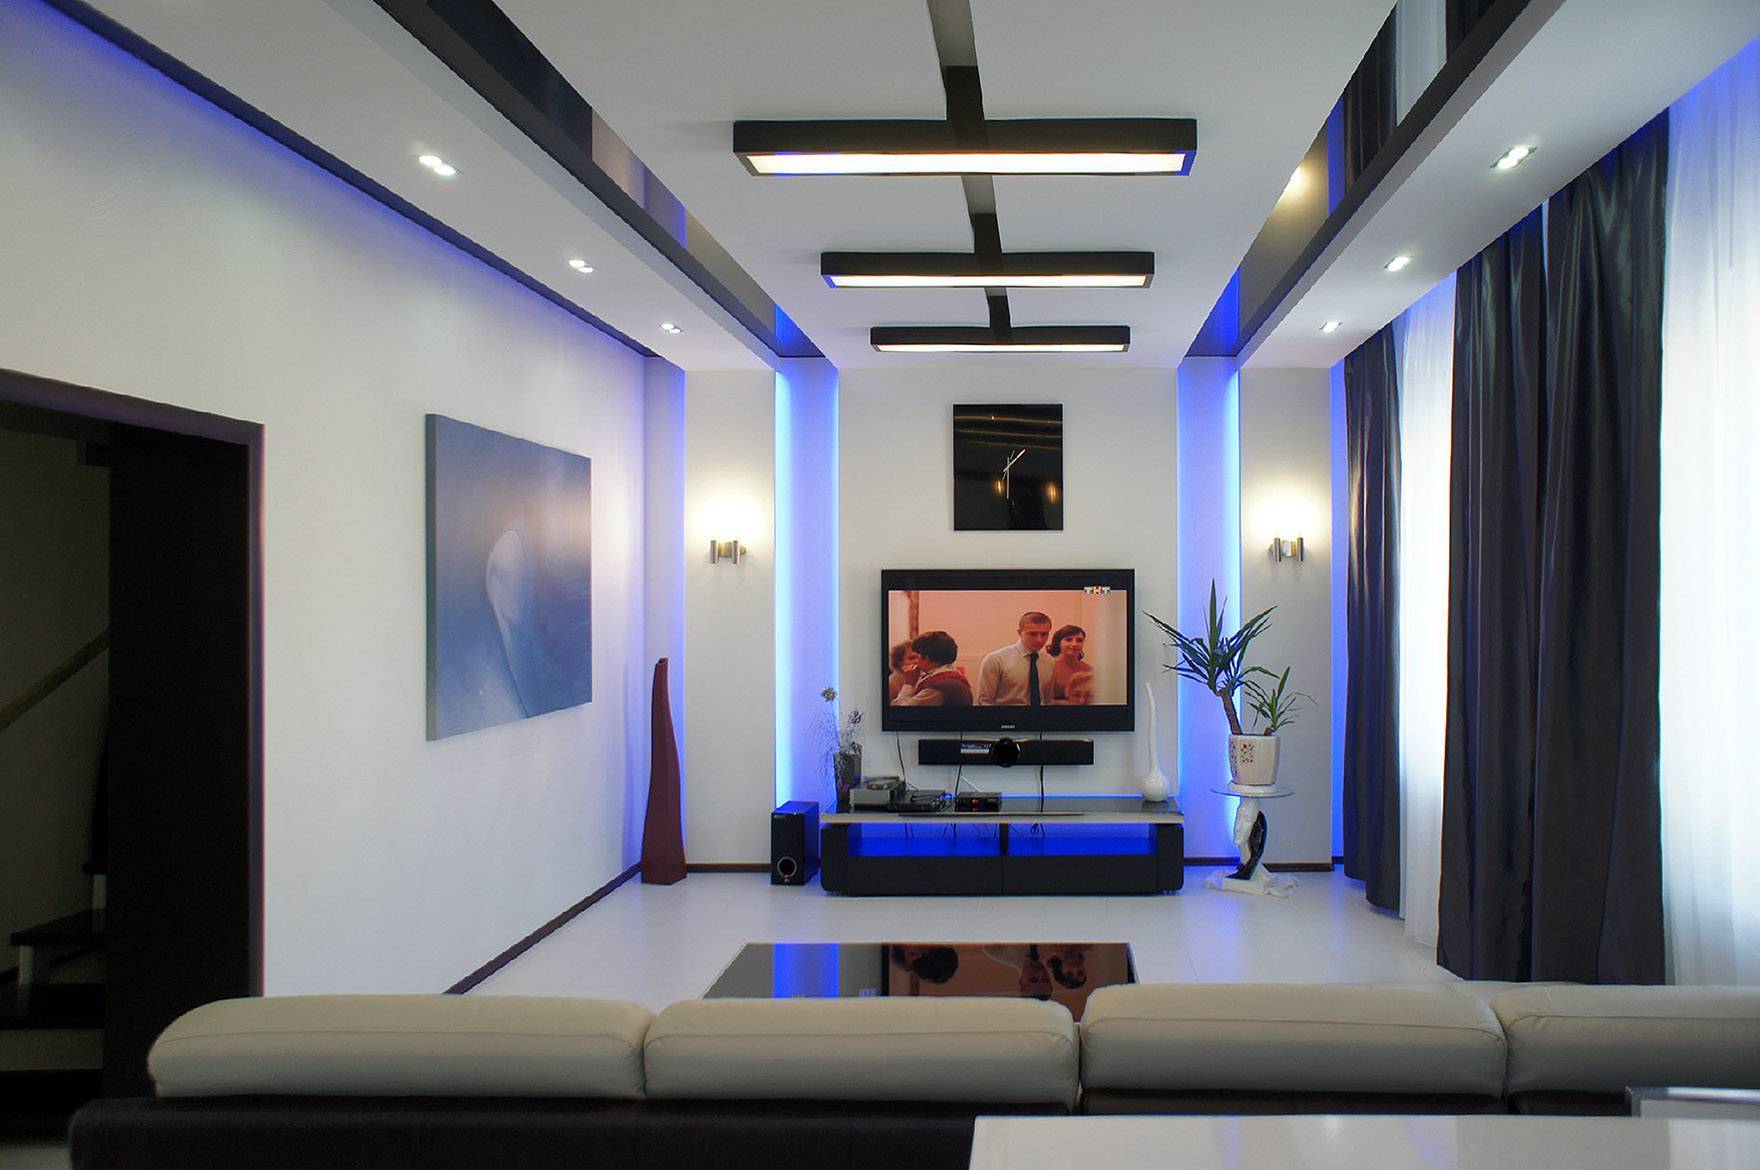 Фото потолков из гипсокартона для зала: одноуровневые, двухуровневые, дизайн, подсветка